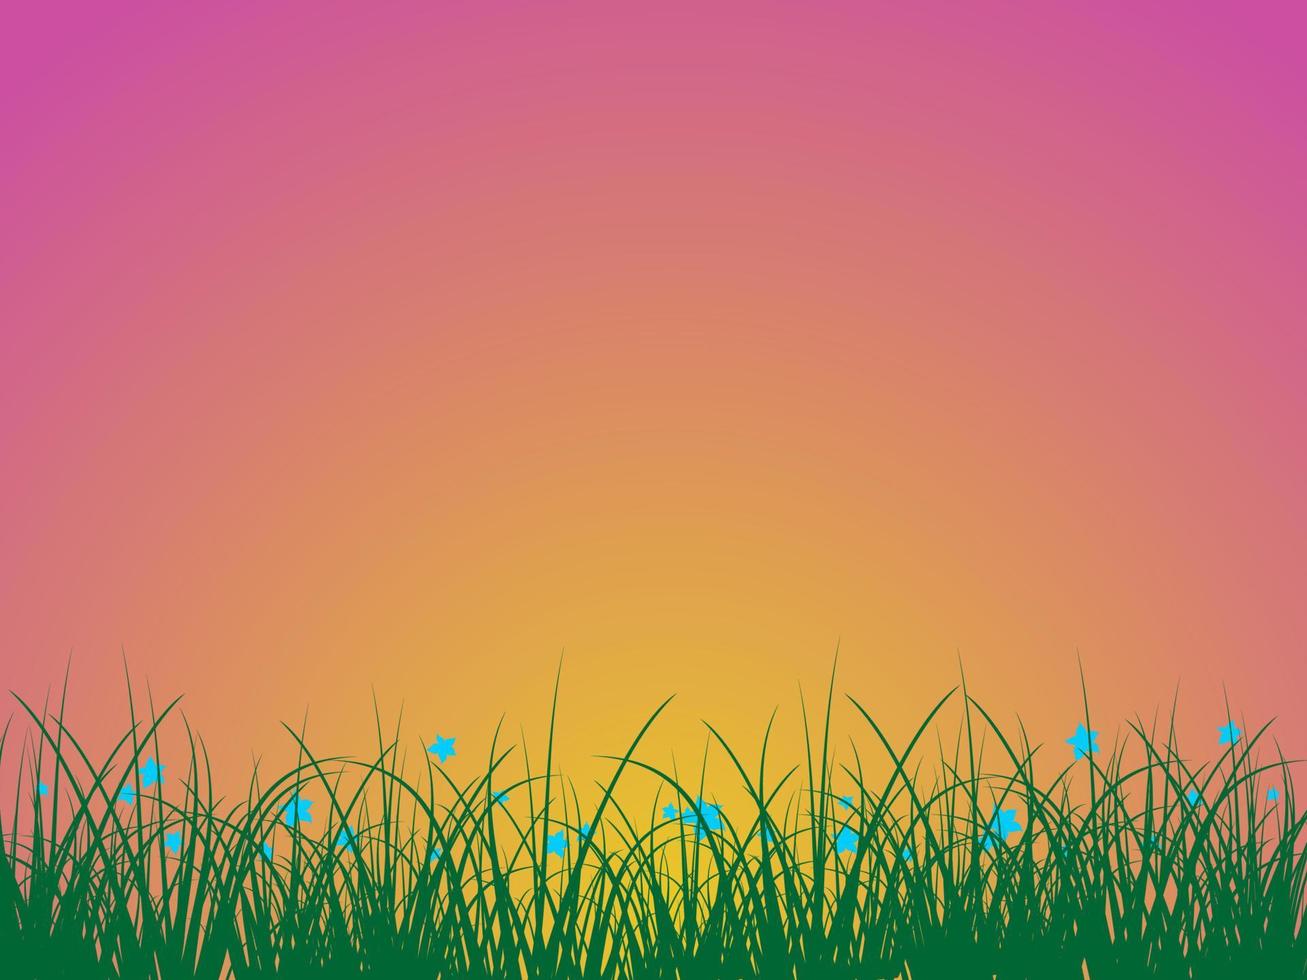 gras met wilde bloemen tegen de achtergrond van zonsopgang vector